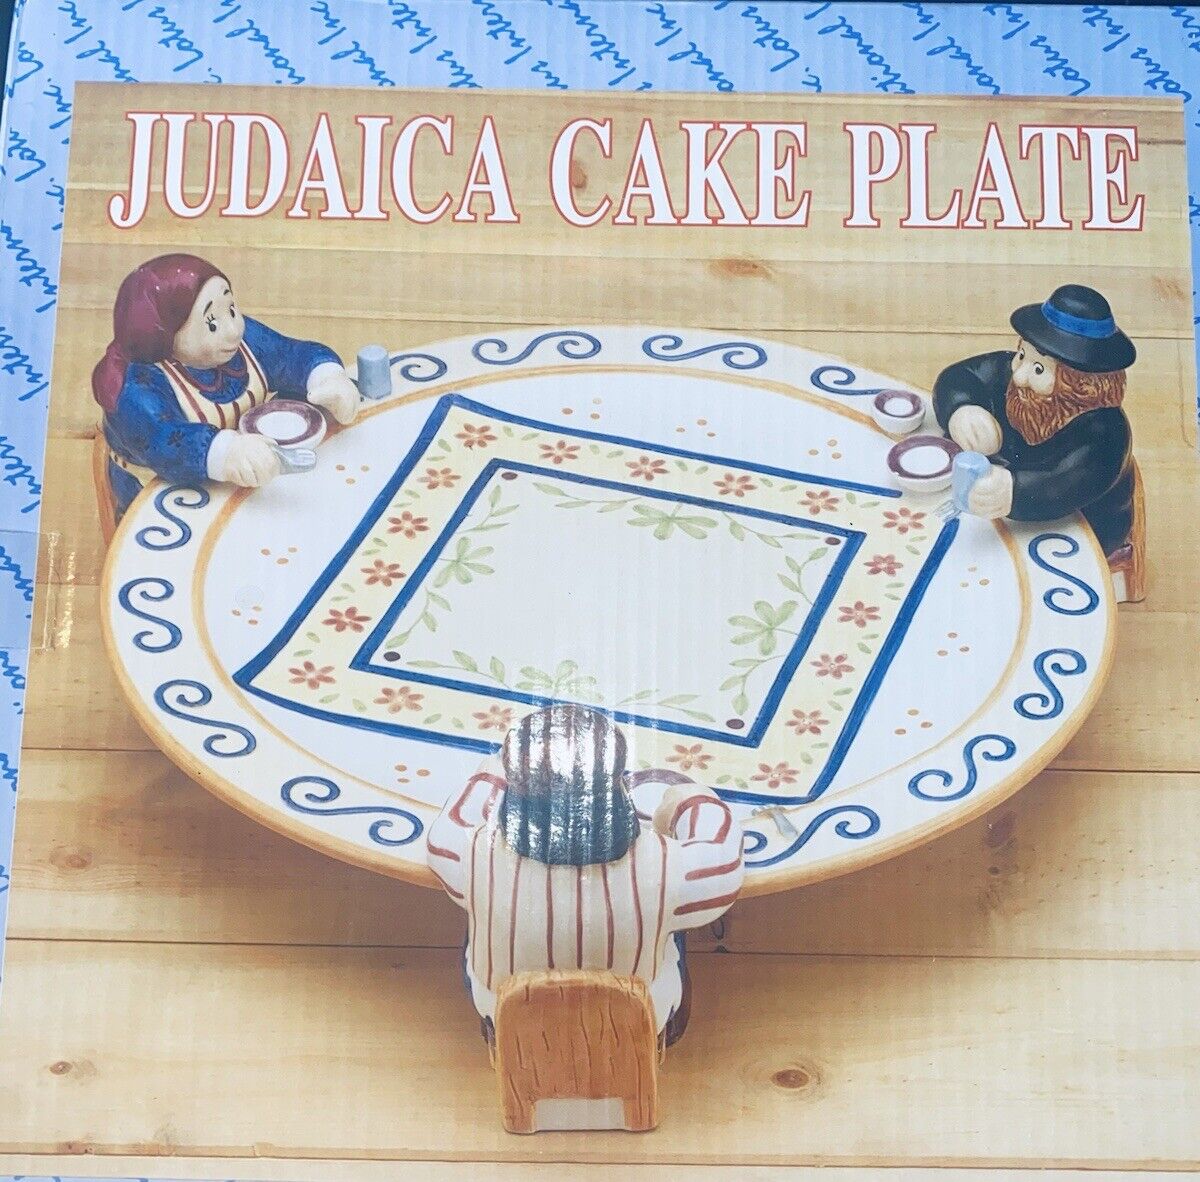 Judaica Cake Plate Lotus New Ceramic Jewish Hanukkah Passover Rabbi Holiday Gift